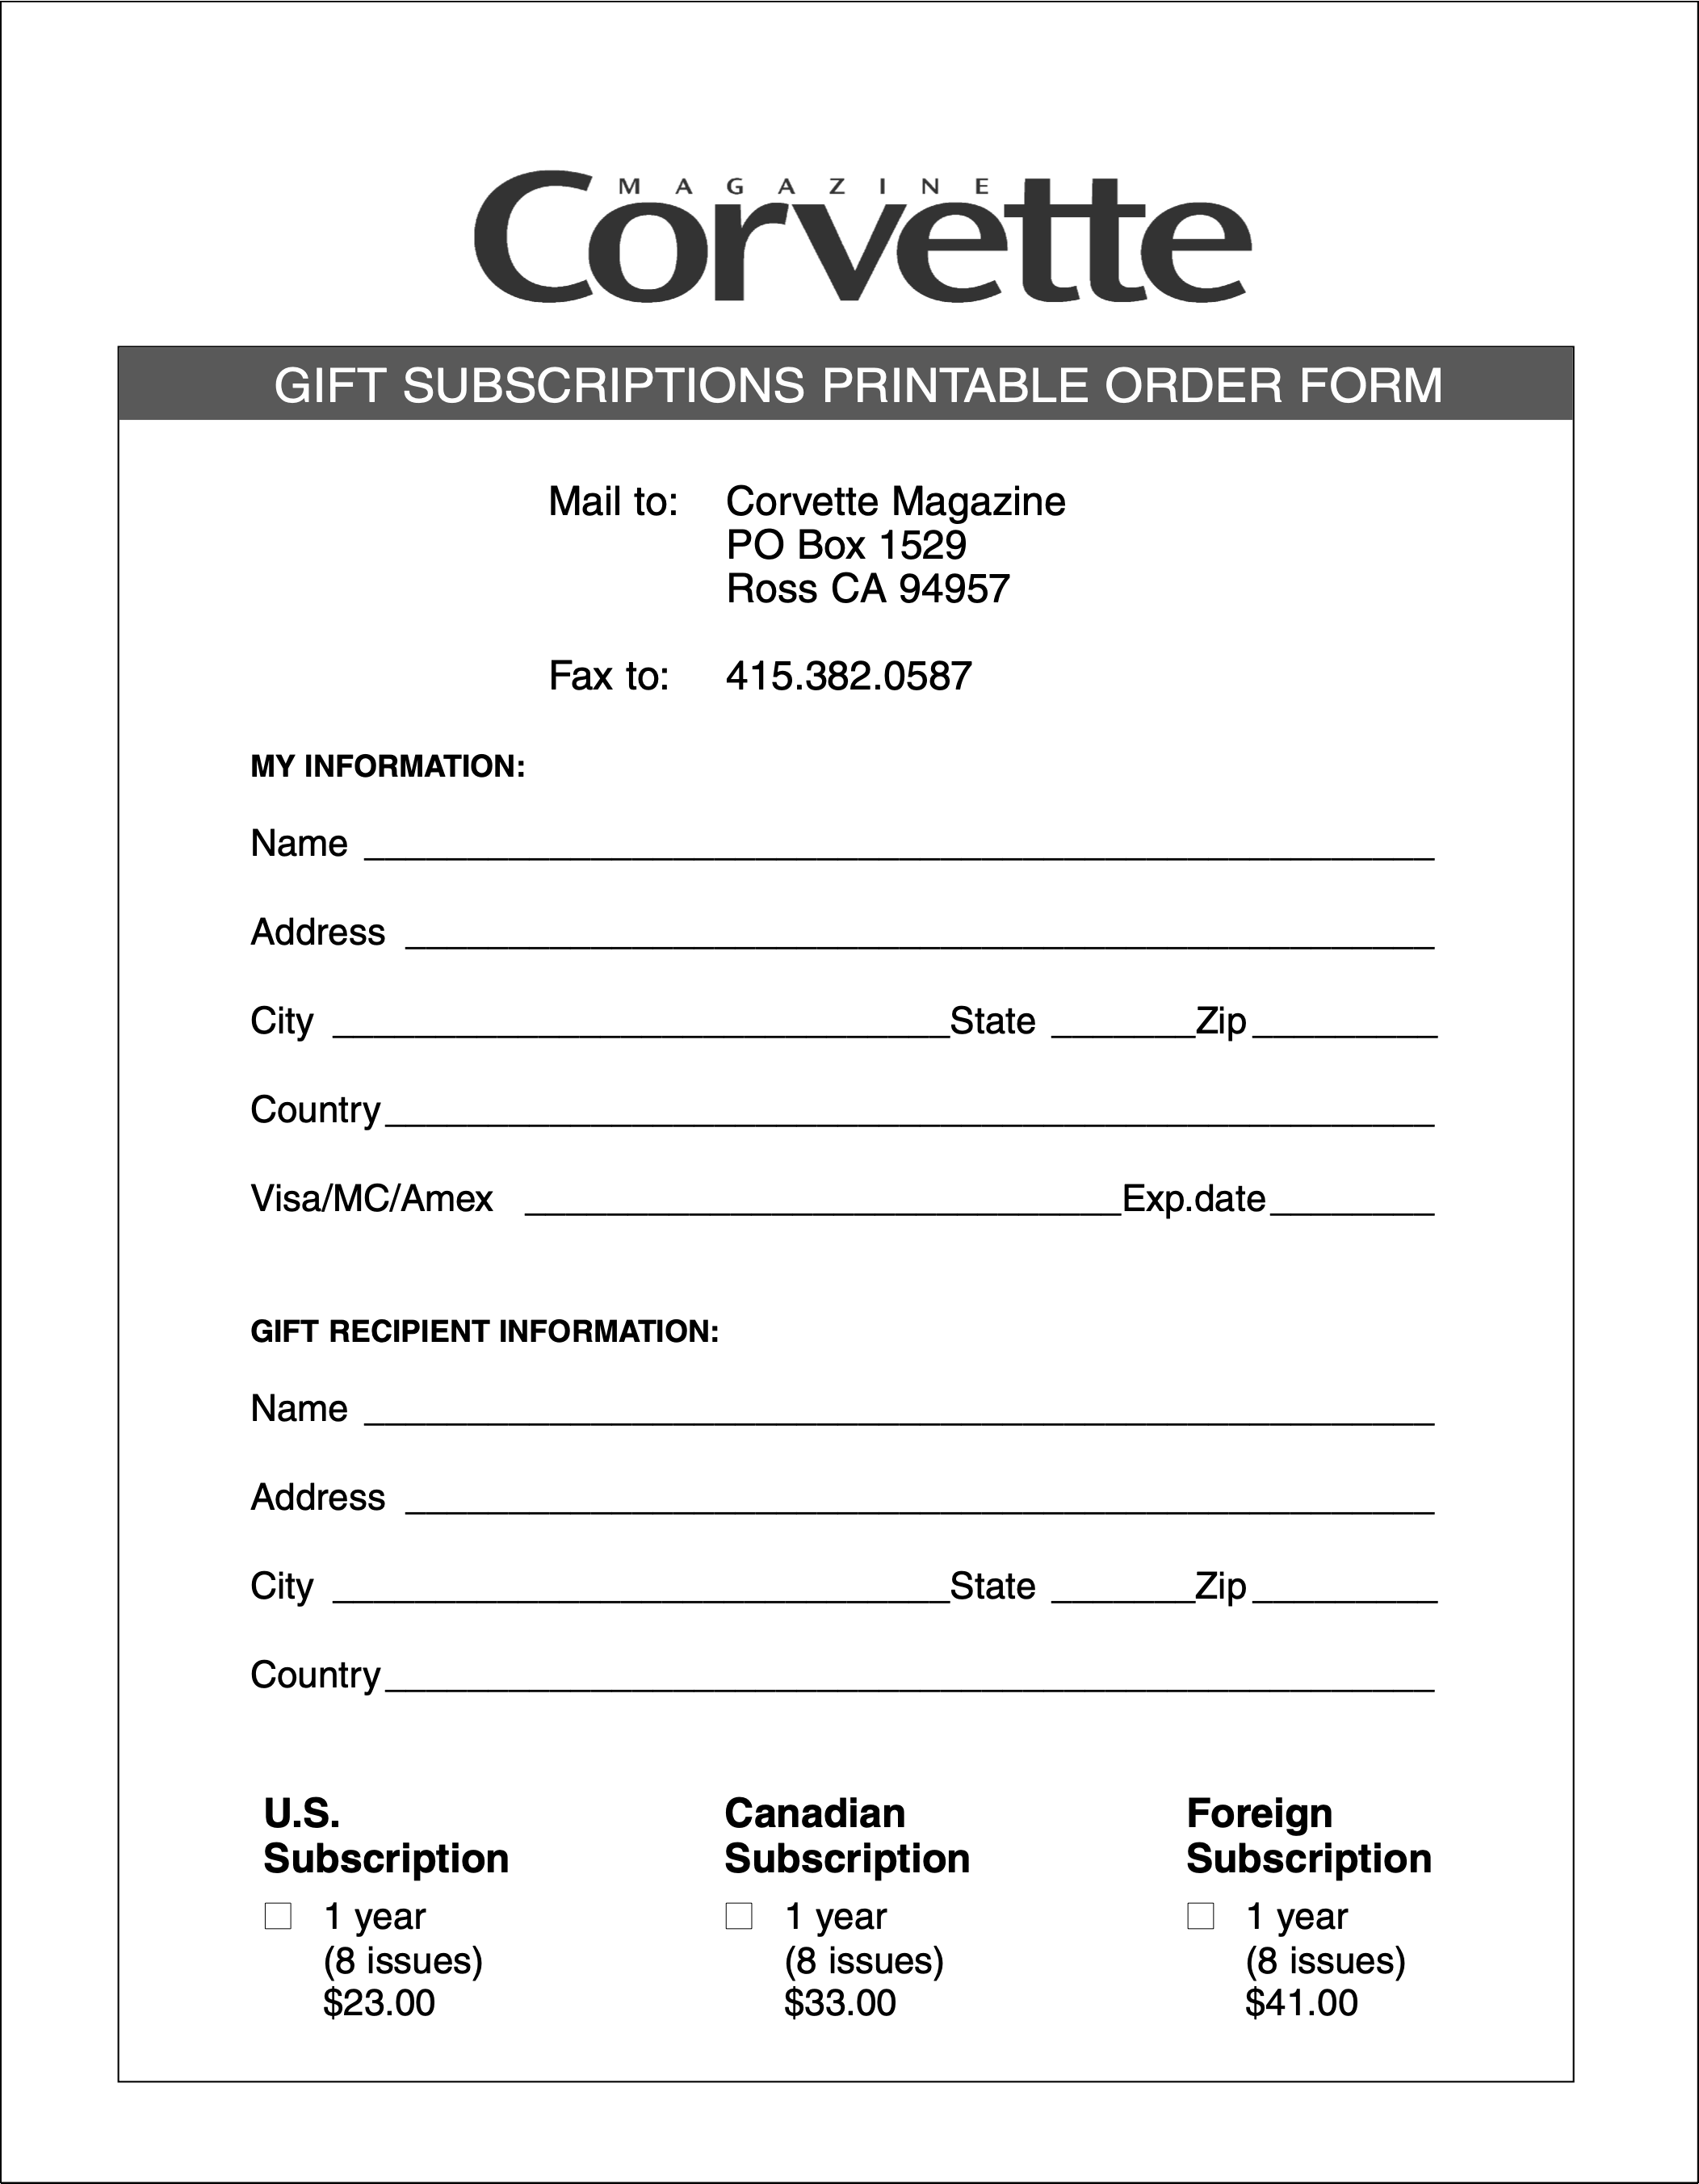 Corvette Magazine Gift Subscription Order Form